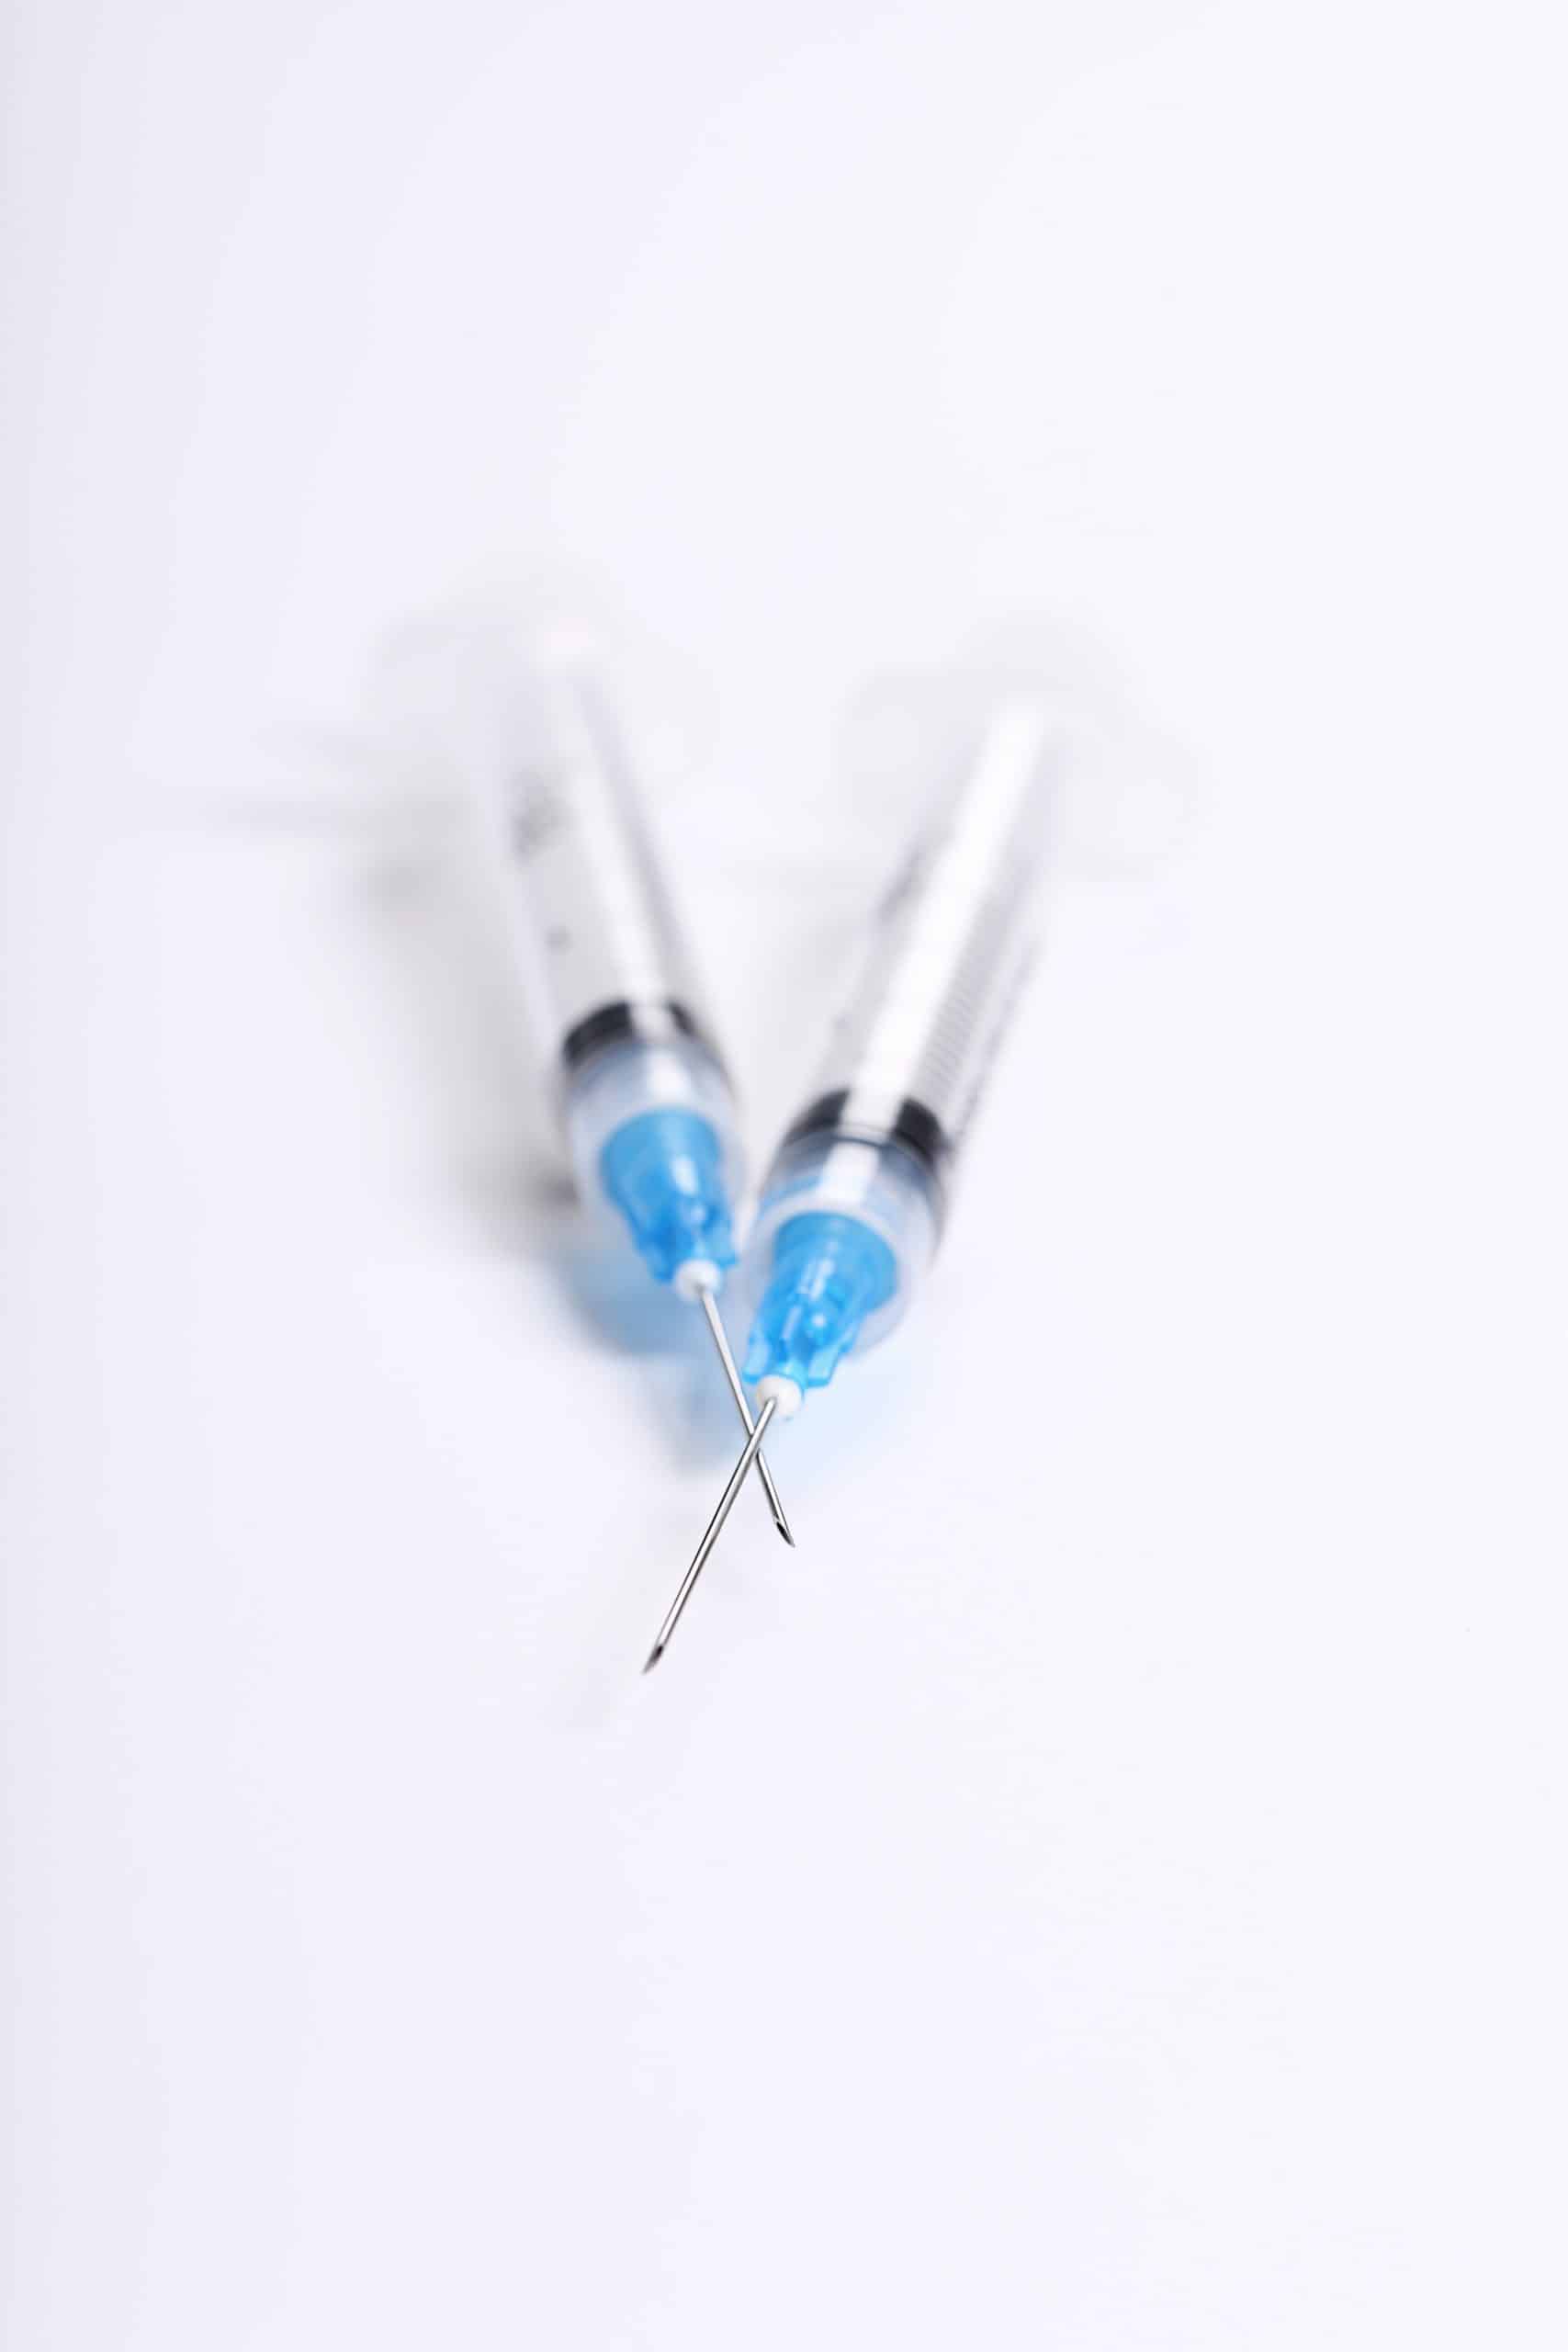 bd syringe needles